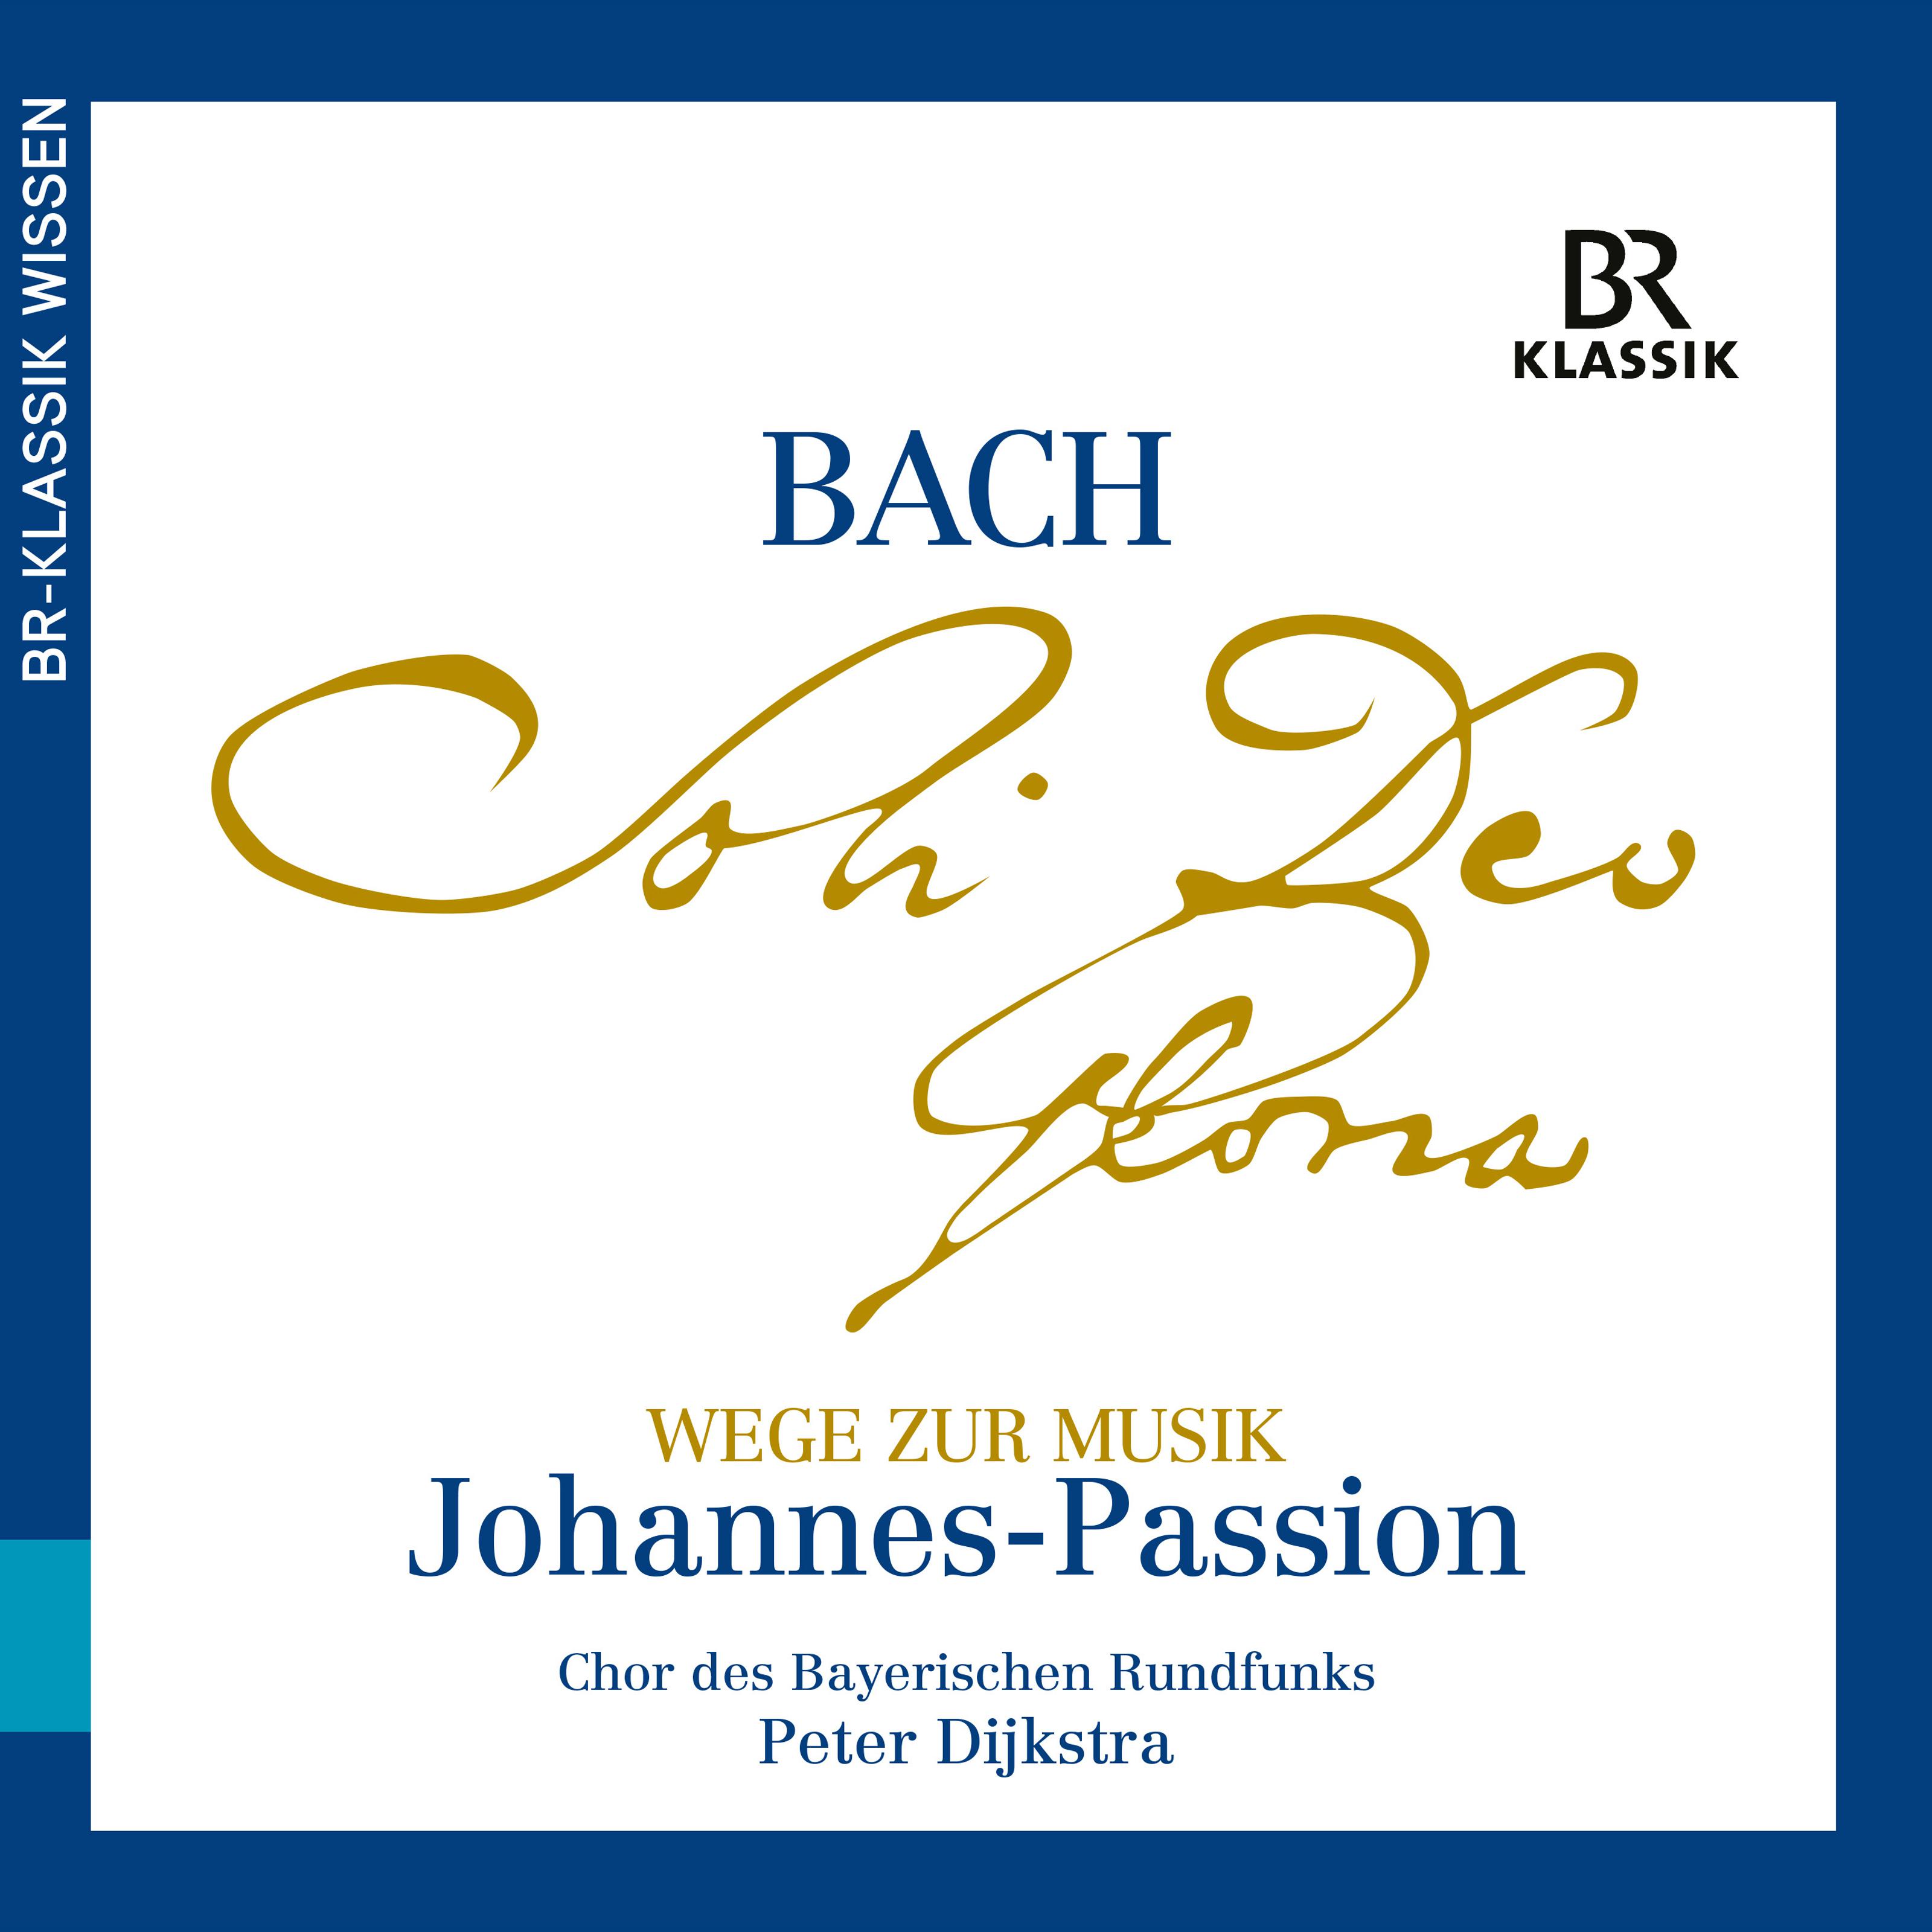 Christian Baumann - Wege zur Musik aus der Johannes-Passion, Teil 3 